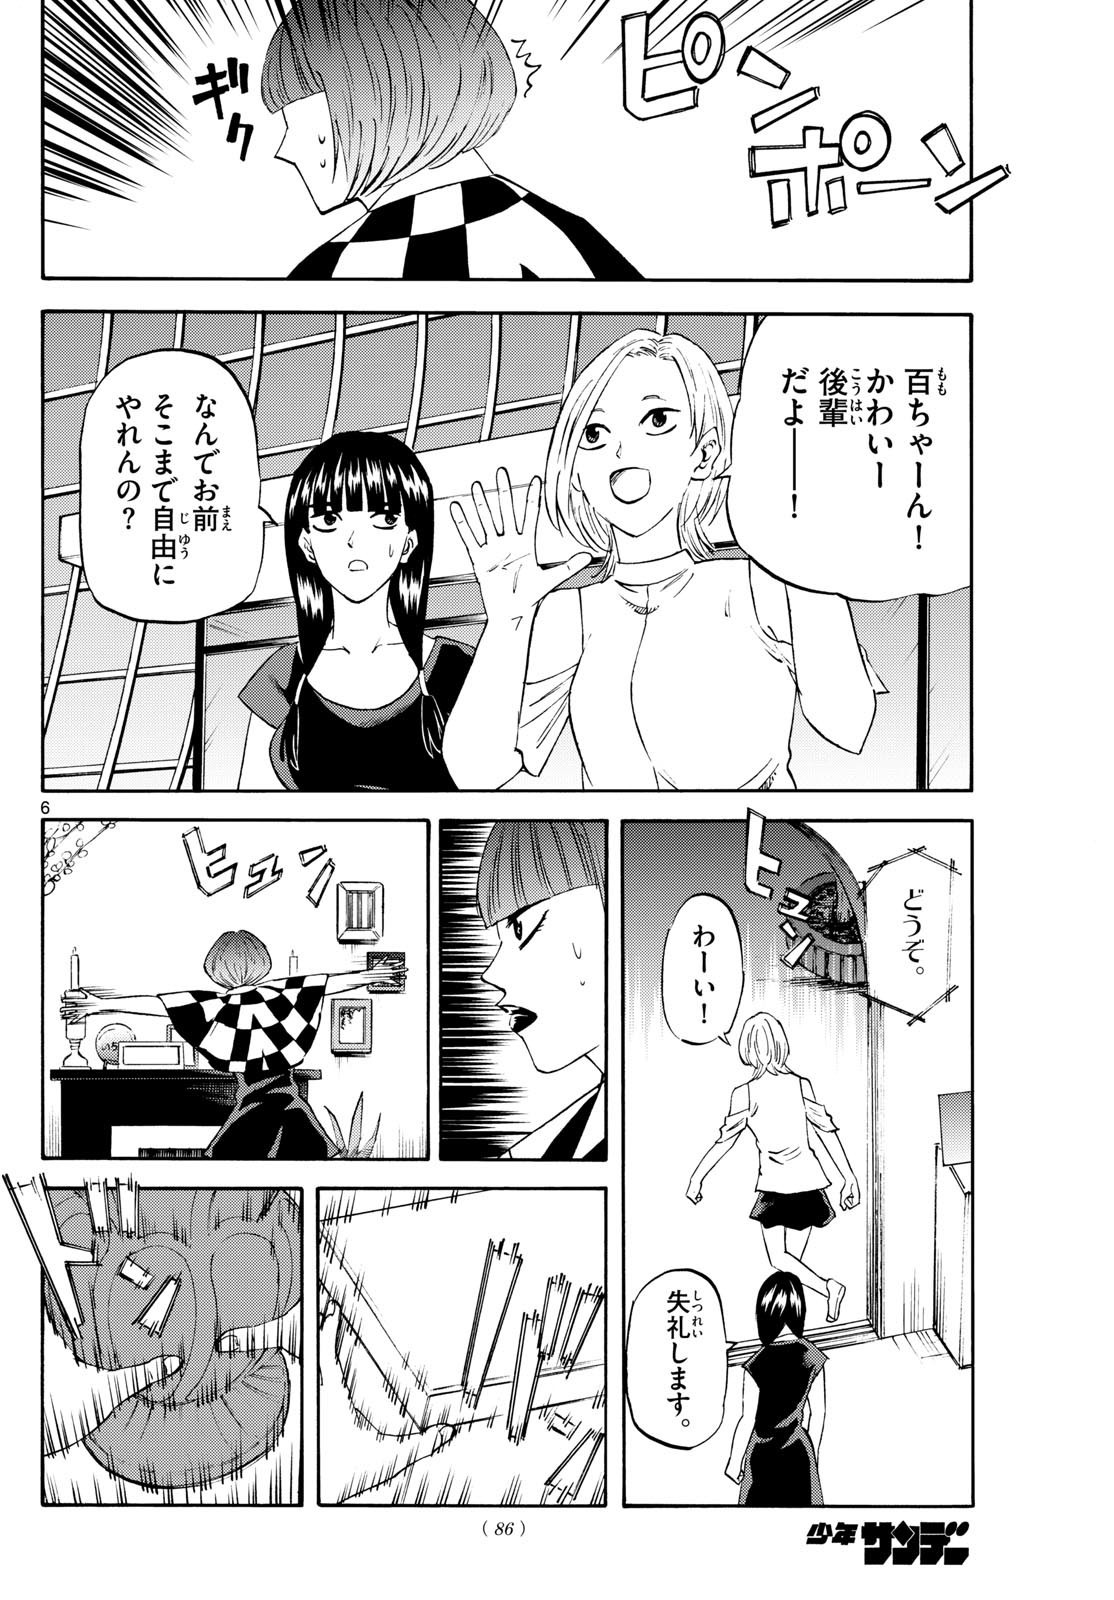 Tatsu to Ichigo - Chapter 199 - Page 6